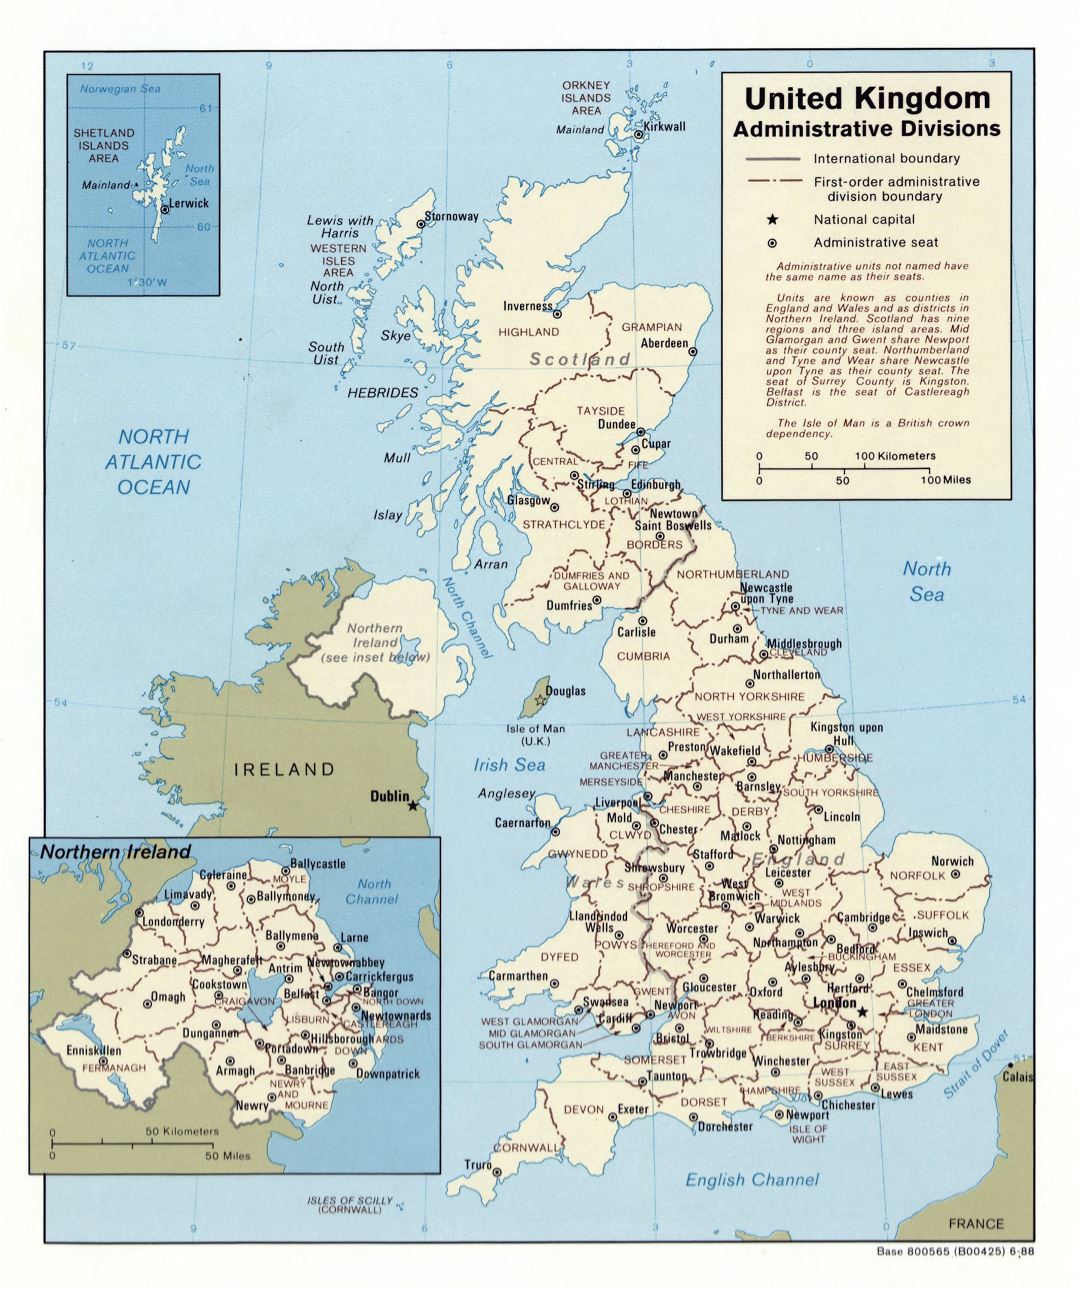 Большая детальная карта административных делений Соединенного Королевства - 1988